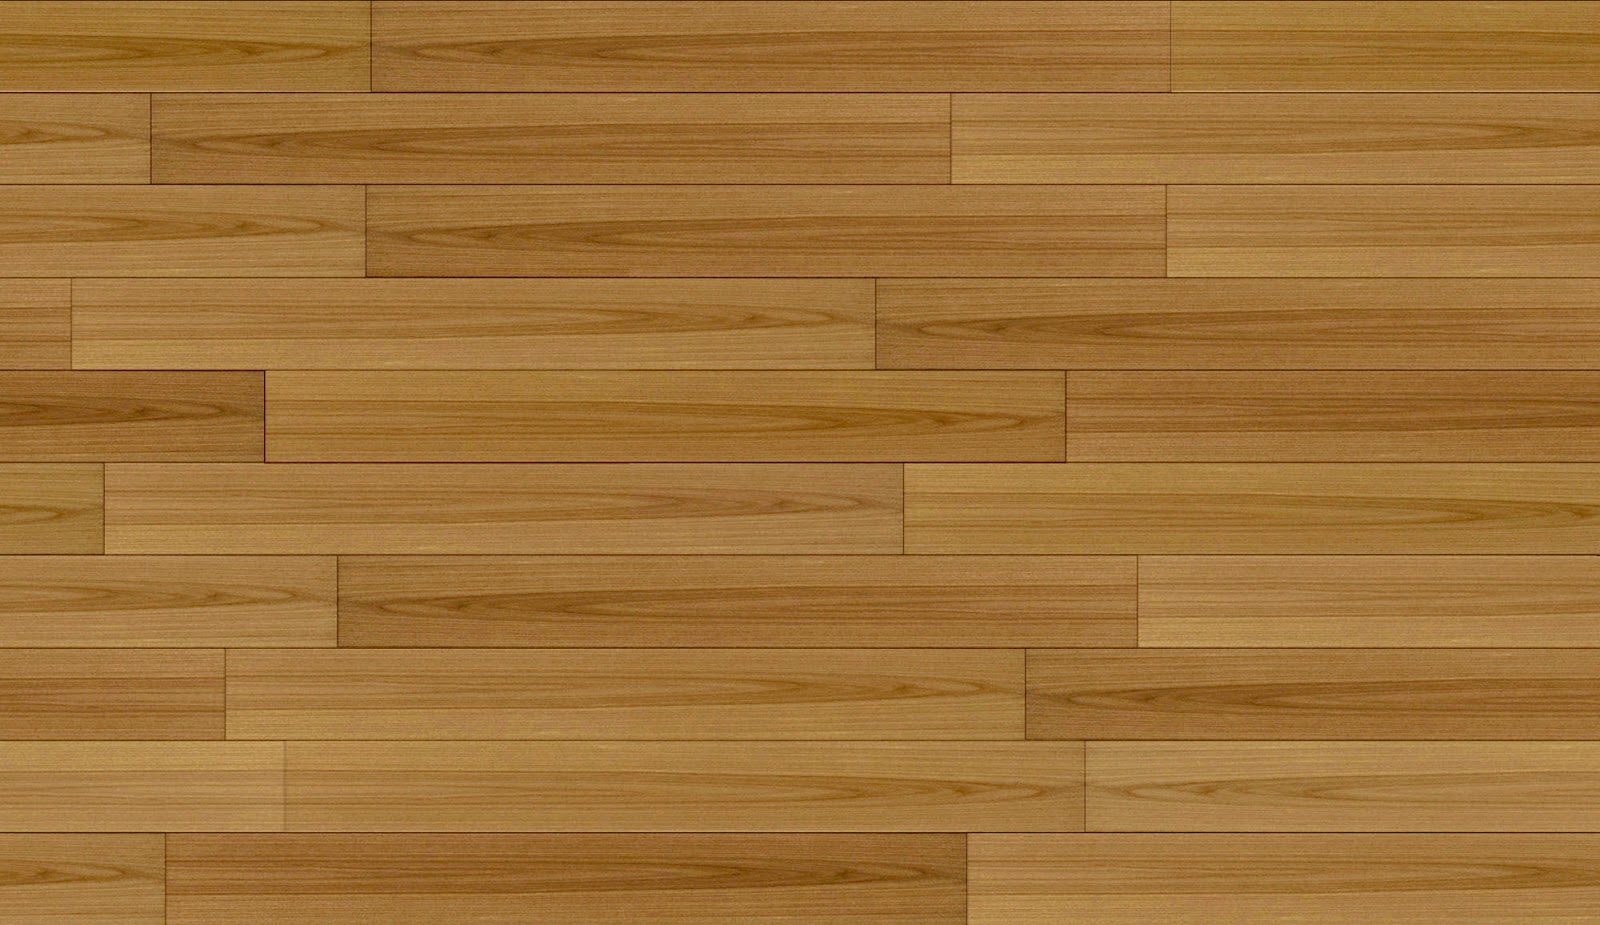 Sketchup Texture Texture Woodwood Floors Parquet Bambu Thatch